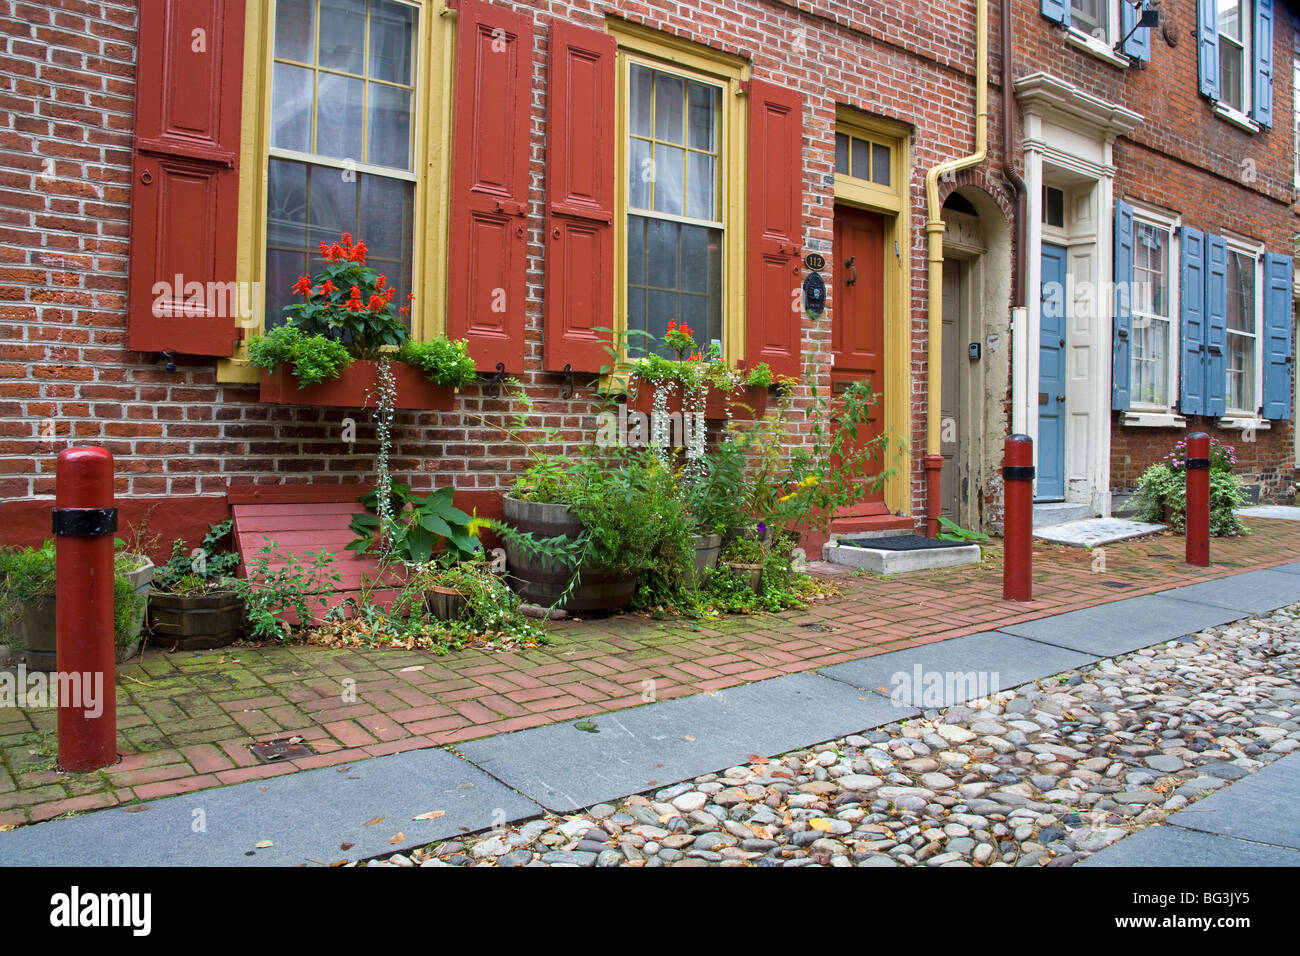 Elfreth's Alley historique, vieux centre-ville, Philadelphie, Pennsylvanie, États-Unis d'Amérique, Amérique du Nord Banque D'Images